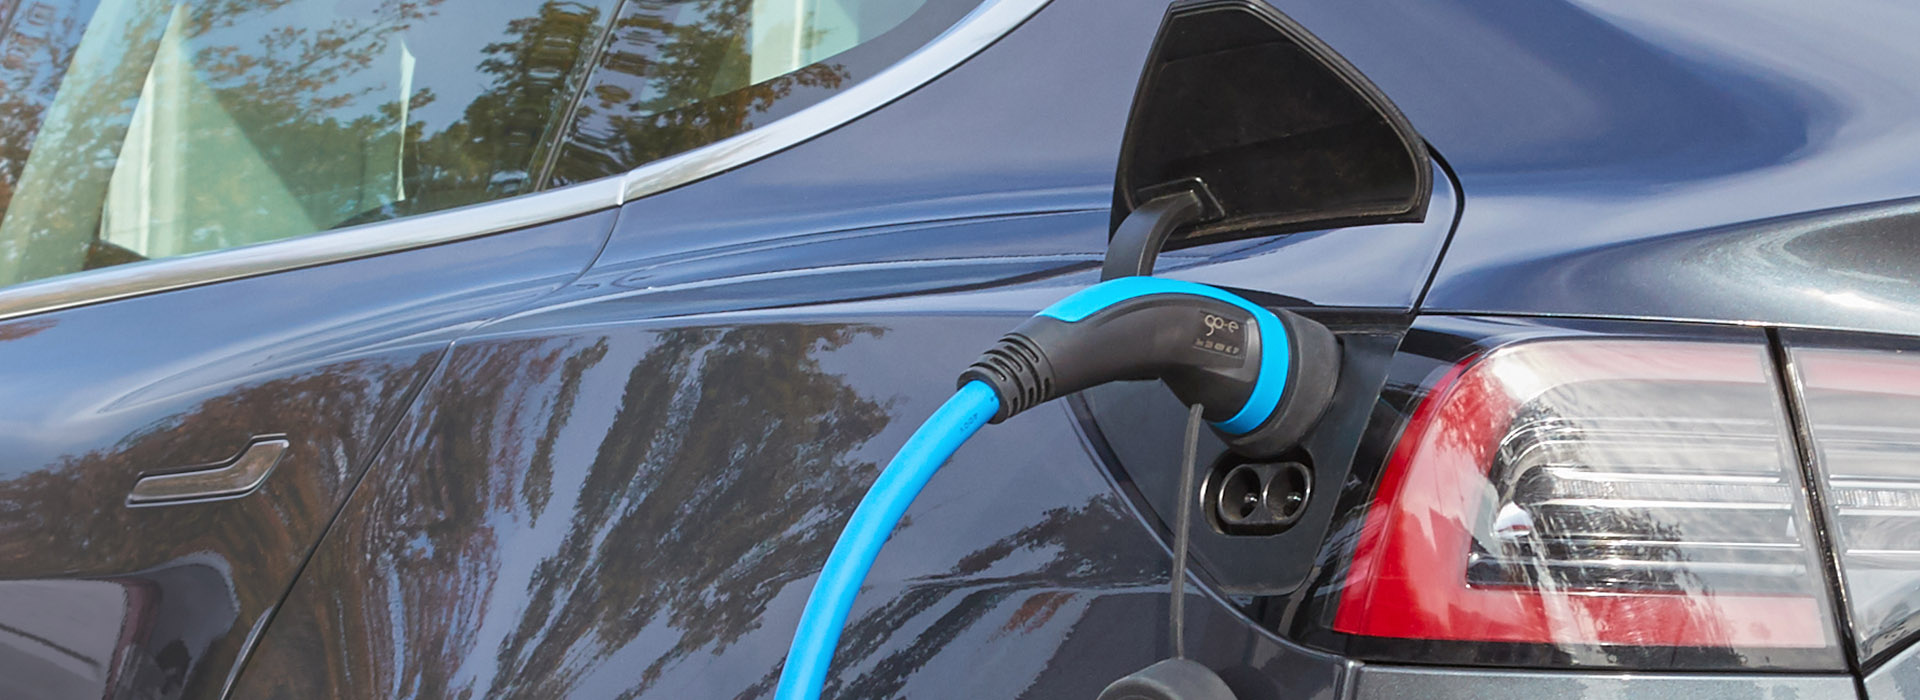 Energielösungen: ein Elektroauto wird aufgeladen